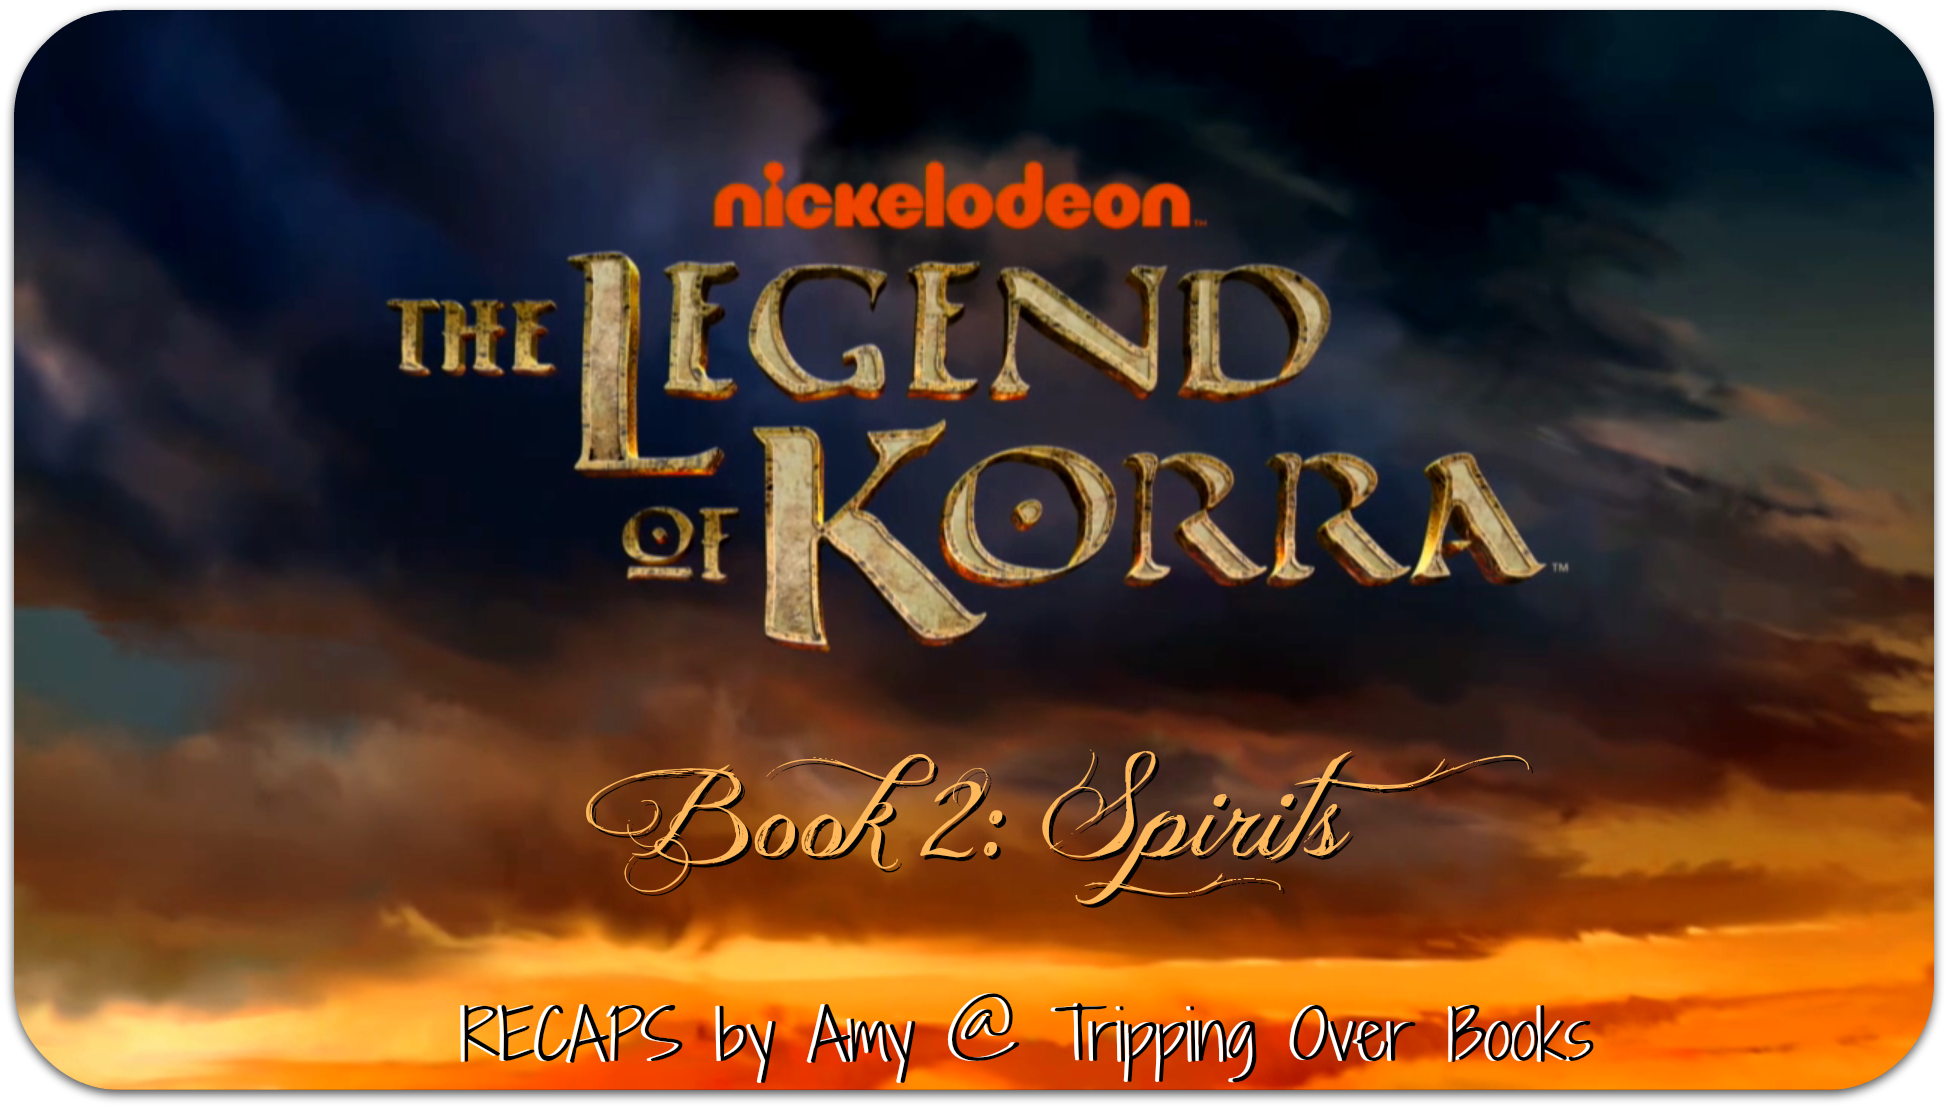 the legend of korra season 2 episode 9